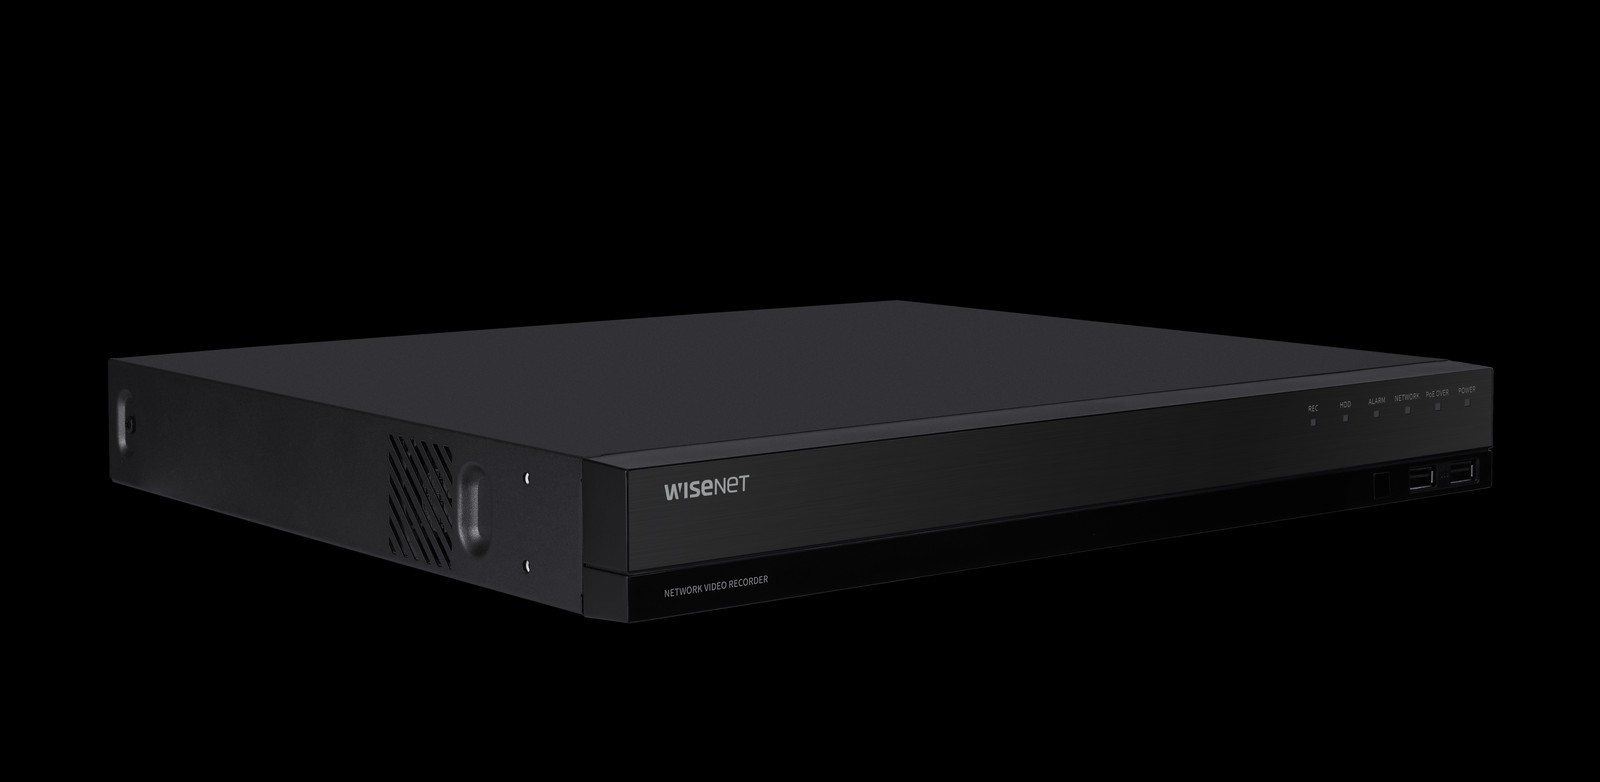 Die neuen PoE Netzwerkvideorecorder nutzen die Wisenet Wave VMS ohne zusätzliche Server.